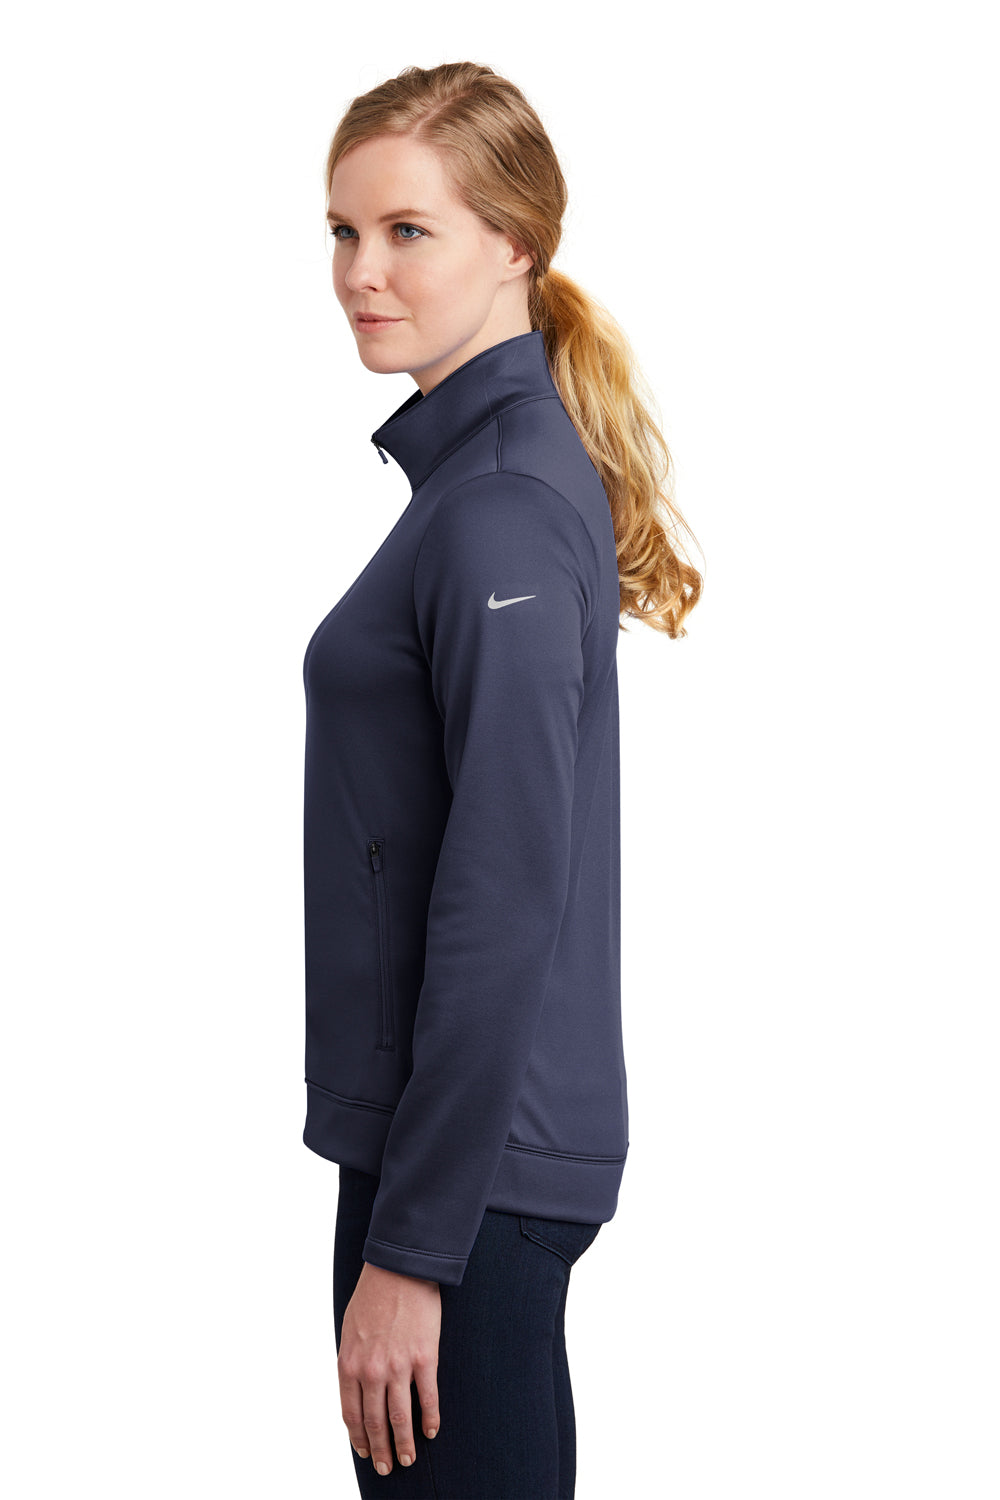 Nike NKAH6260 Womens Therma-Fit Moisture Wicking Fleece Full Zip Sweatshirt Midnight Navy Blue Model Side